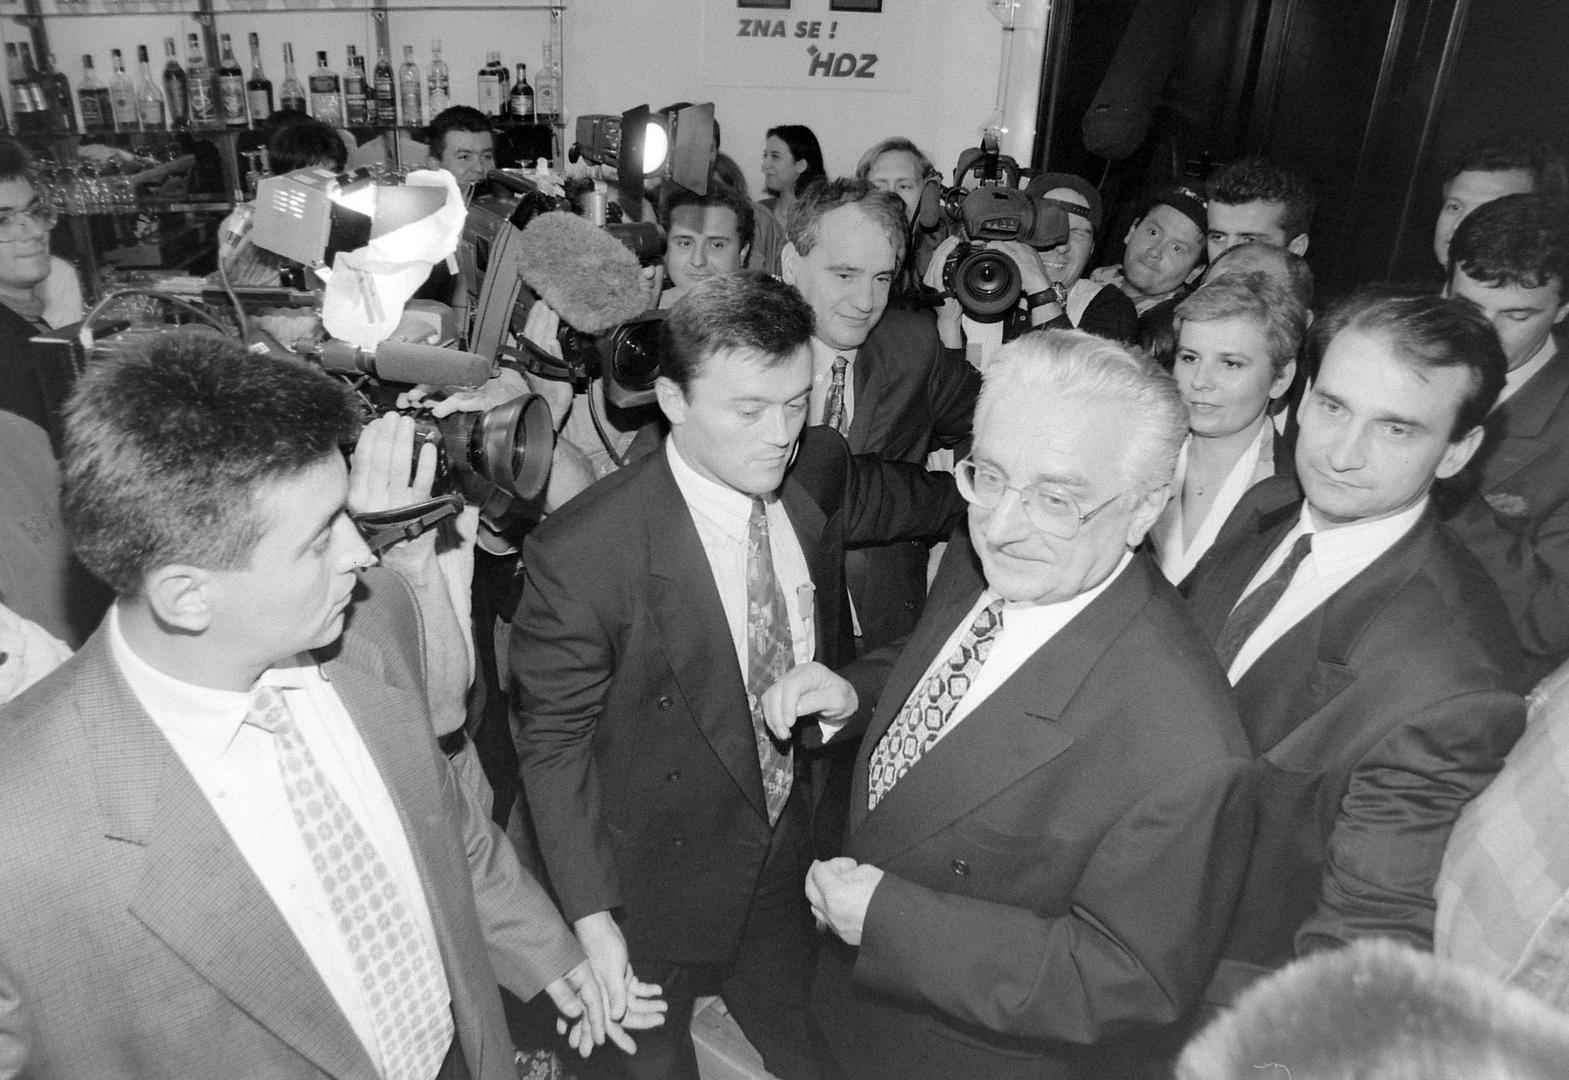 Na drugim predsjedničkim izborima održanima u lipnju 1997. godine Franjo Tuđman je osvojio 61 posto glasova (1,337,990 glasova), Vlado Gotovac bio je na drugom mjestu sa 17 posto (382,630 glasova), a treći je bio Zdravko Tomac s 21 posto glasova (458,172 glasa).